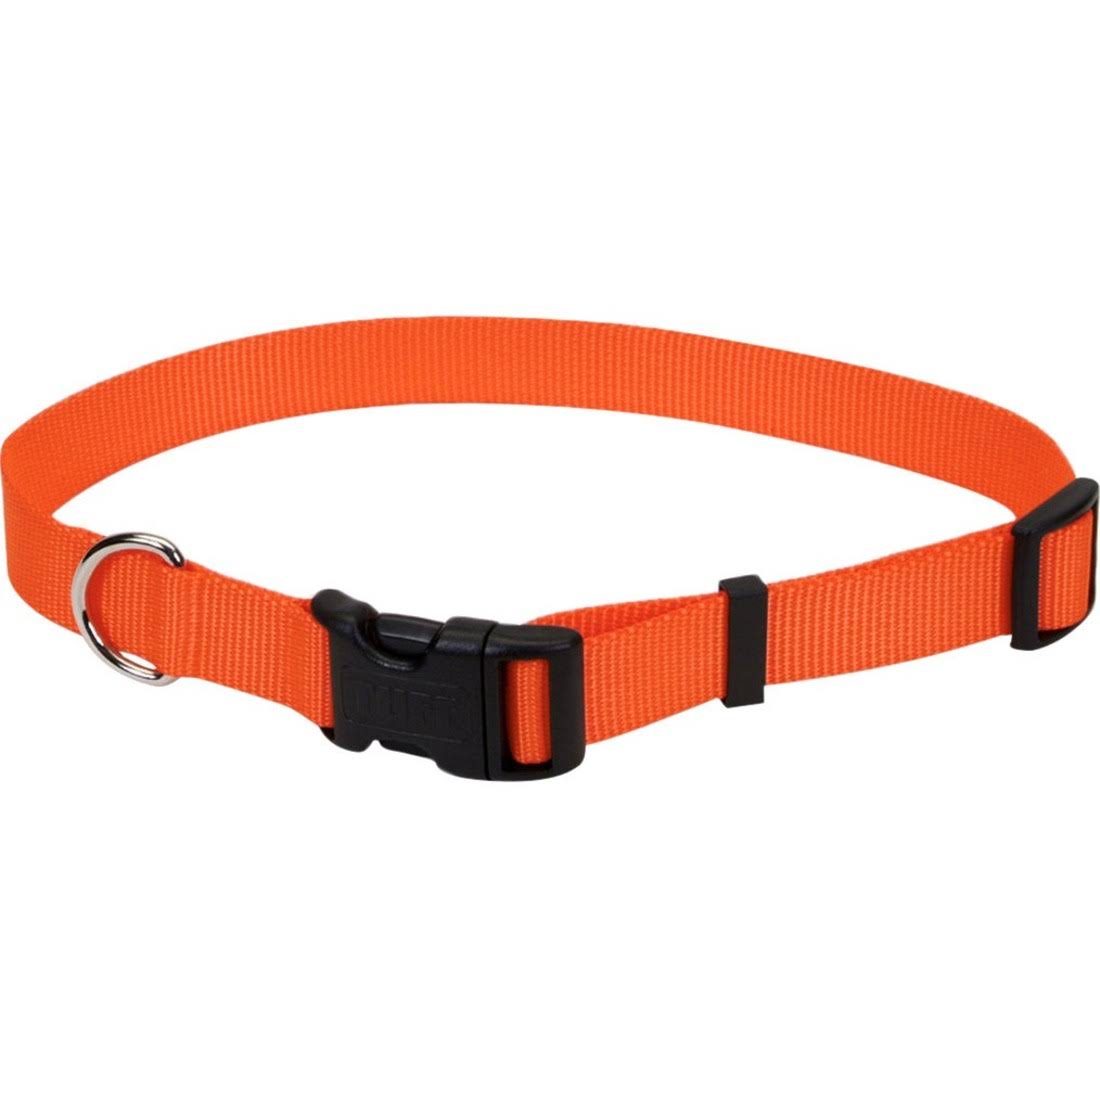 Coastal Pet Products Nylon Adjustable Dog Collar - Orange